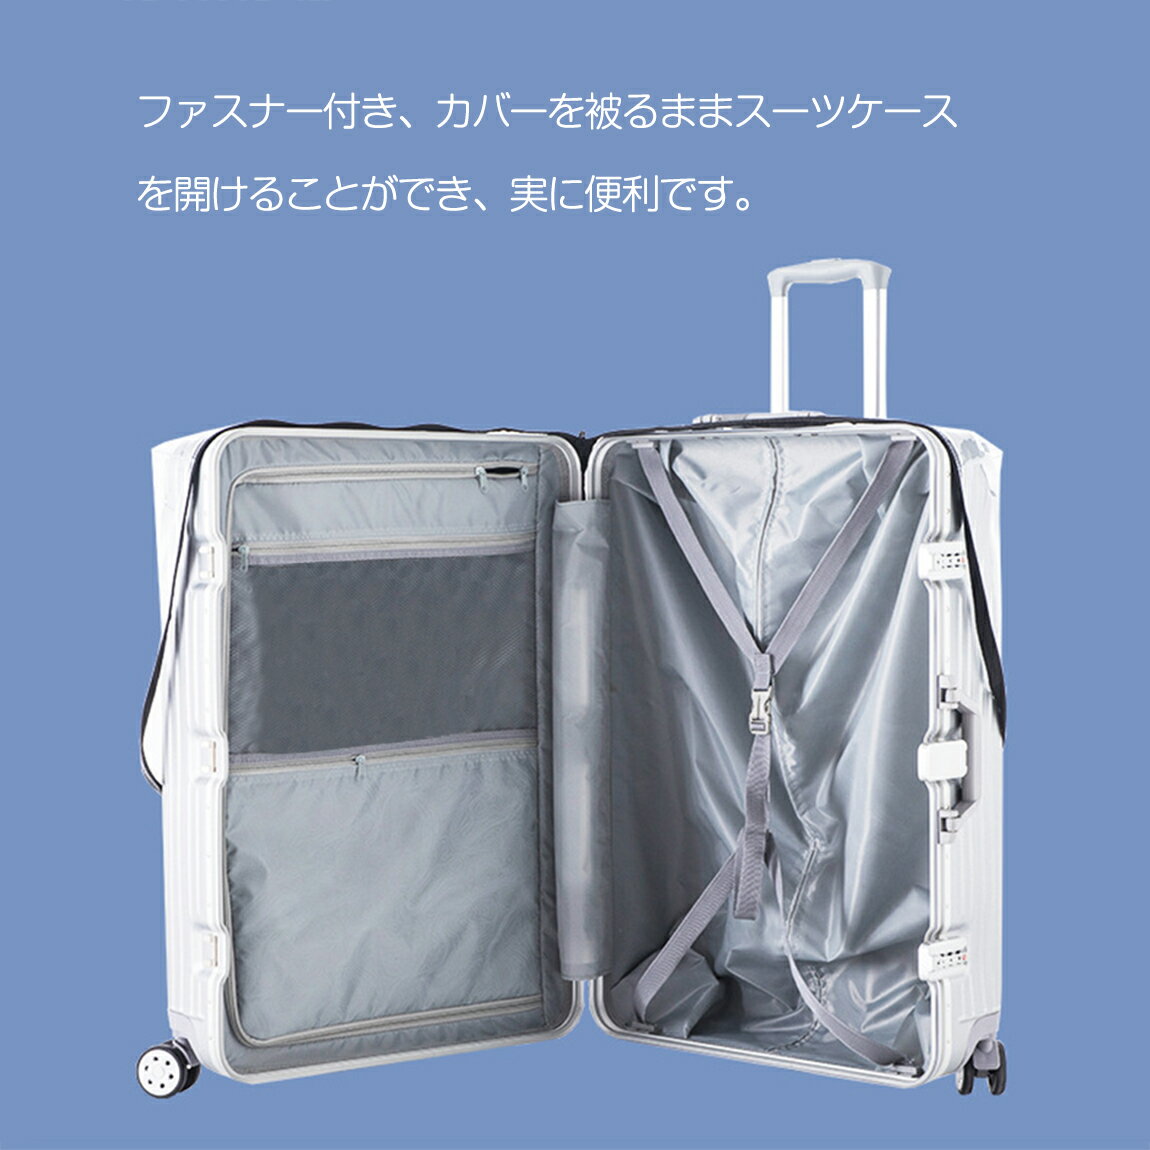 TABITORA タビトラ スーツケースカバー キャリーケースバッグ 保護カバー 伸縮素材 防水 送料無料 Sサイズ キズ防止 XT0001-S  新しい季節